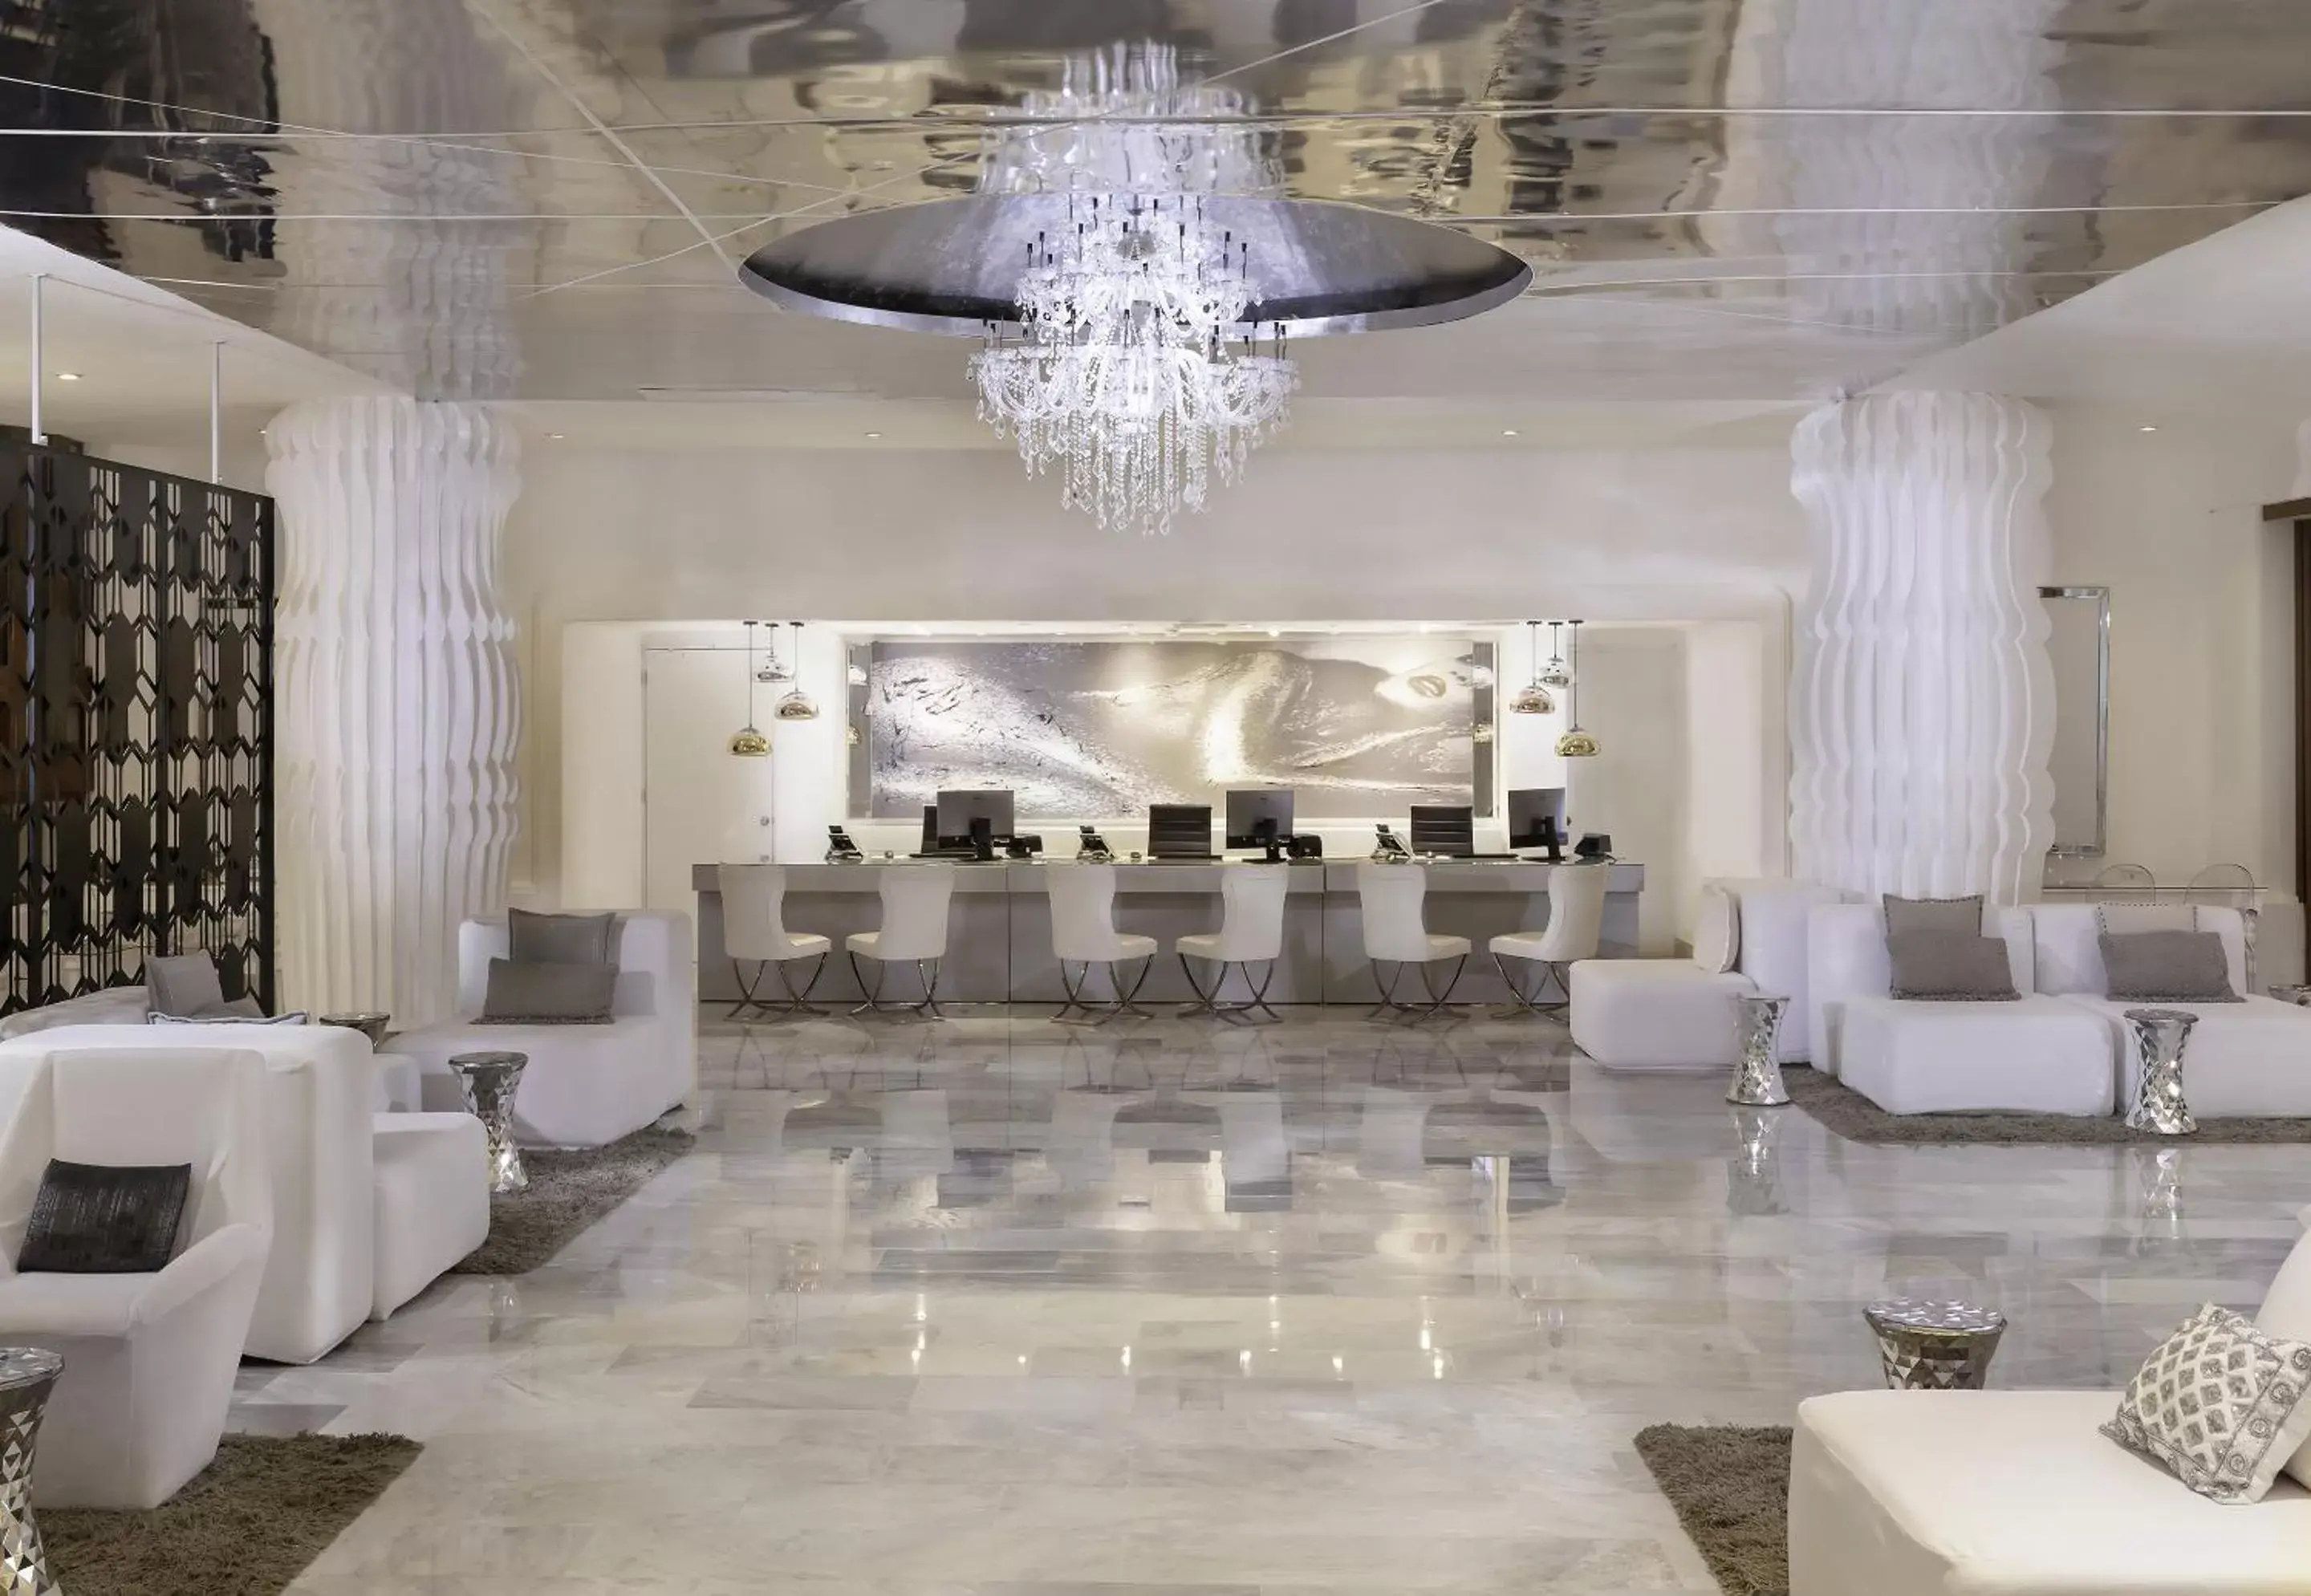 Lobby or reception, Banquet Facilities in Desire Riviera Maya Pearl Resort